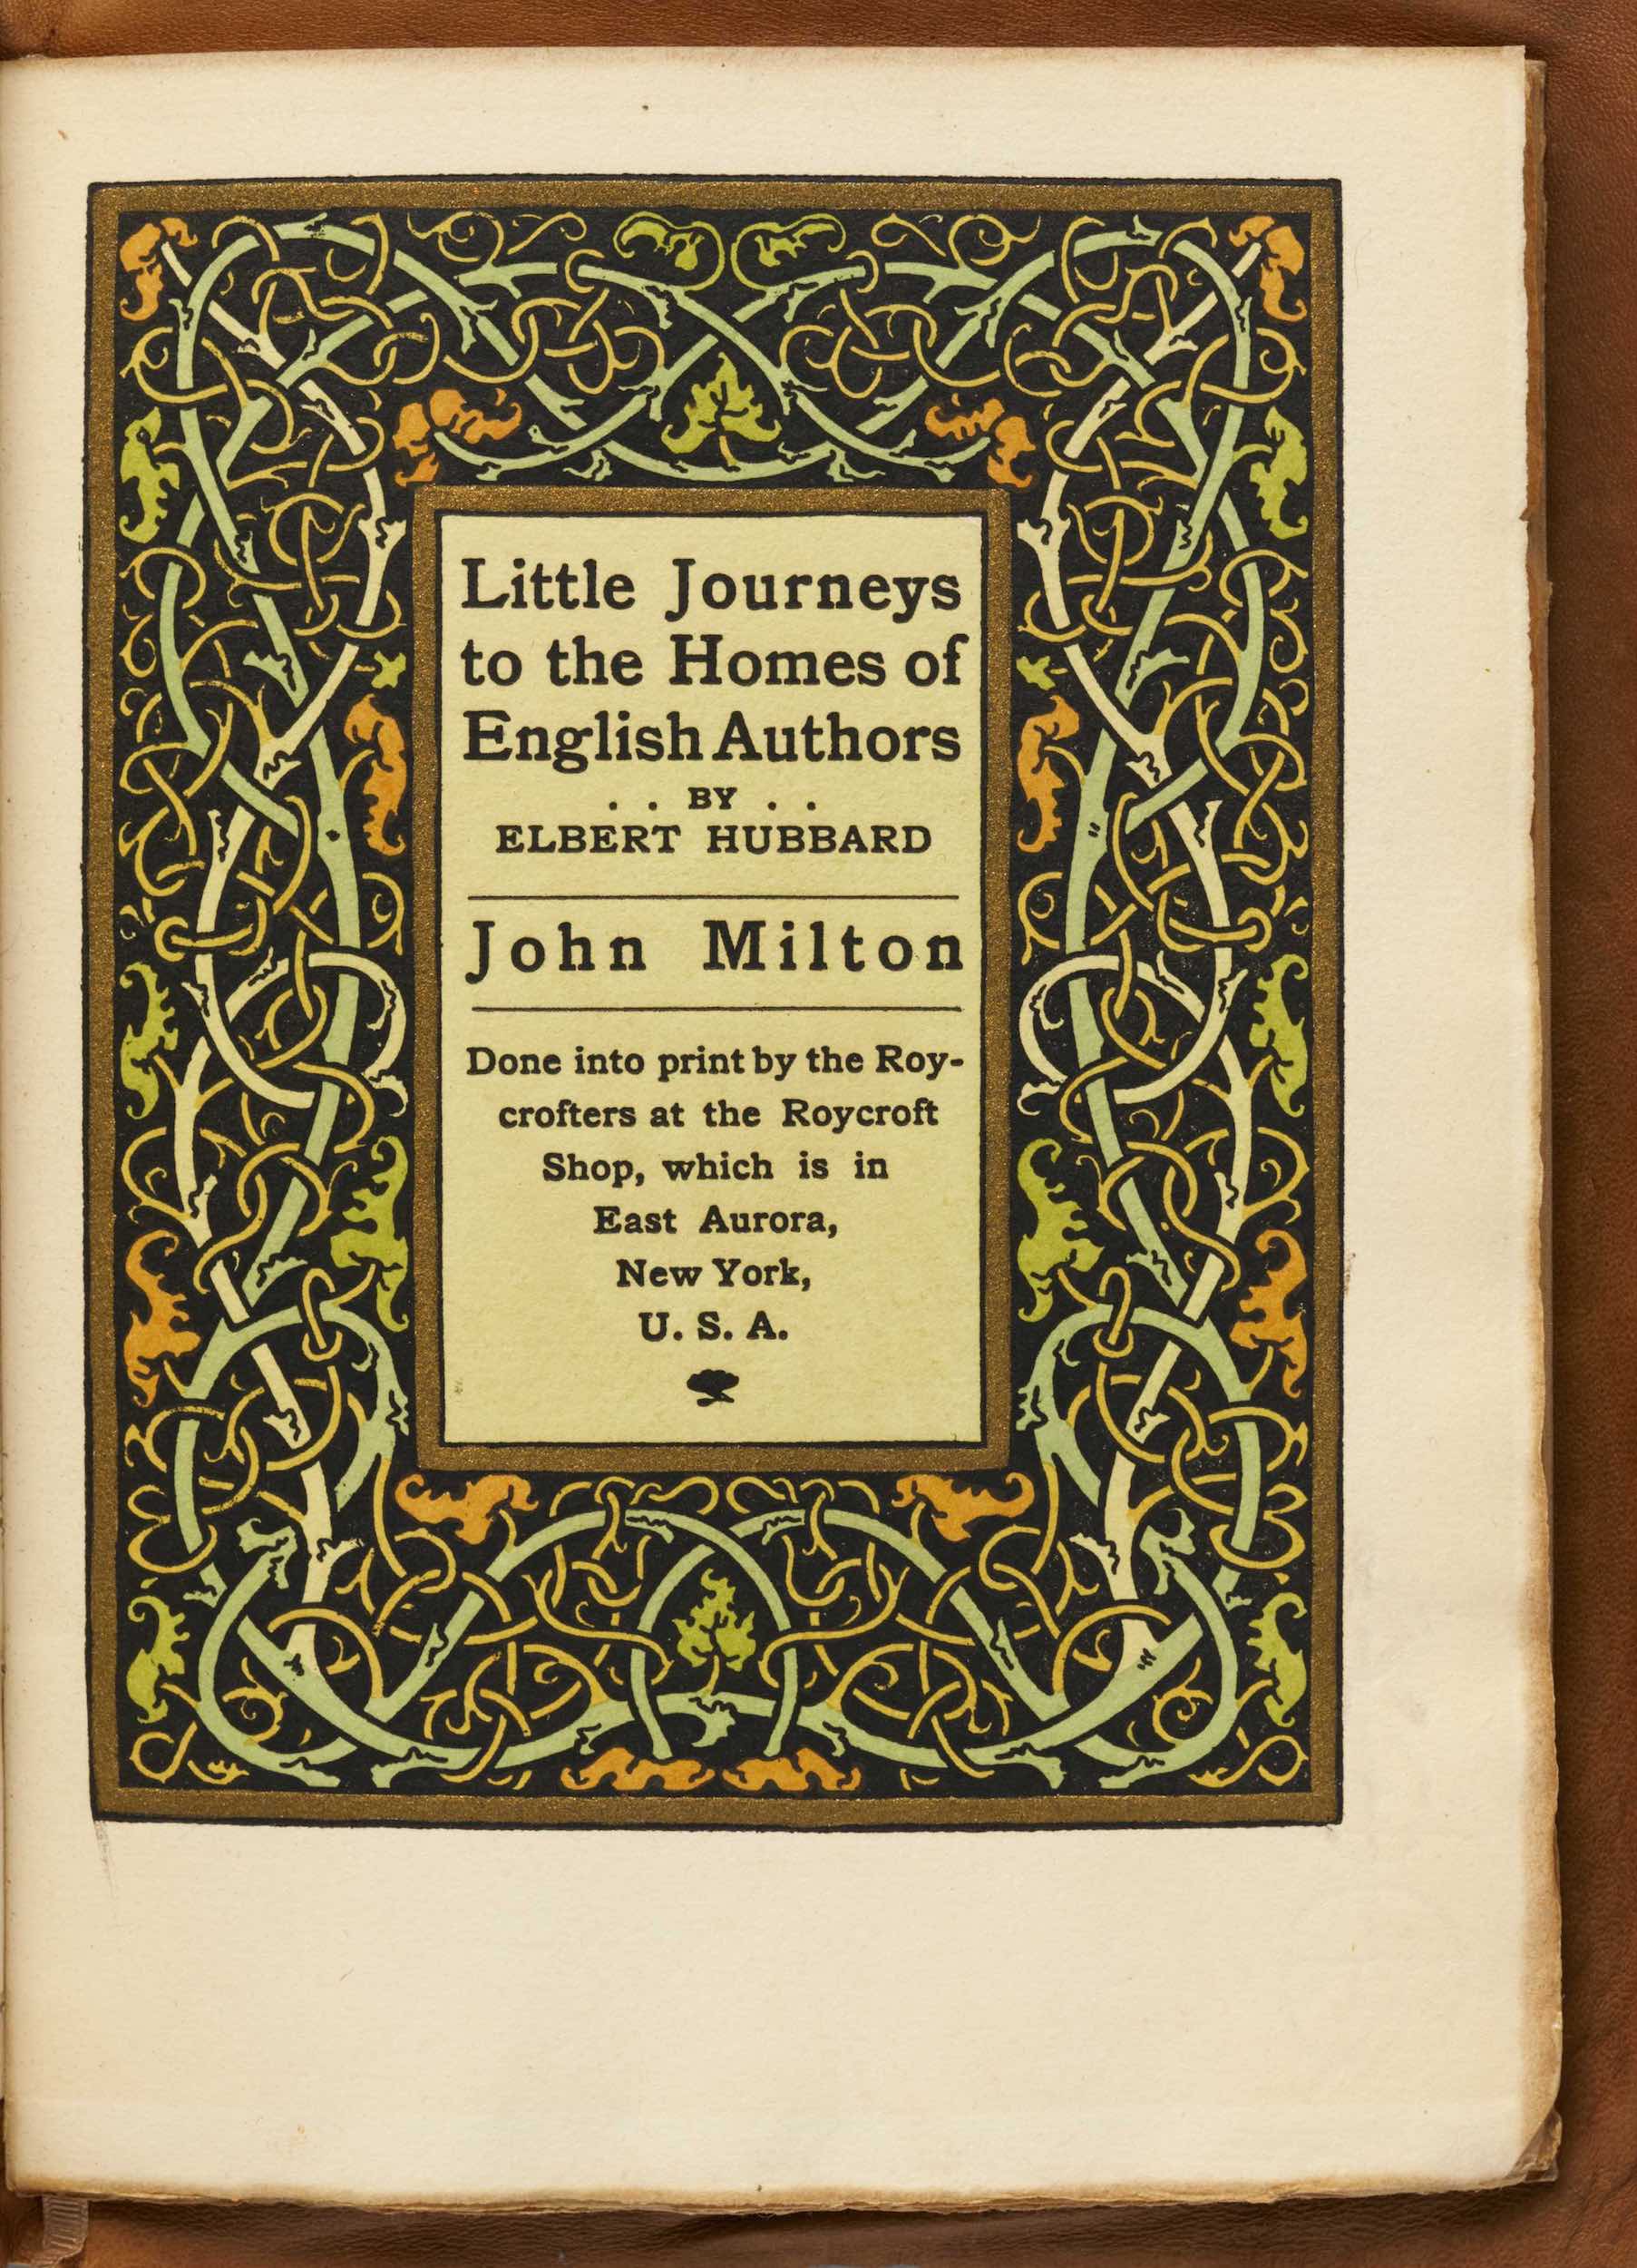 エルバルト・ハバート<br />
『リトルジャーニーズ・<br />
英国の著作者のもとへ：ジョン・ミルトン』<br />
1899年　ロイクロフト・プレス